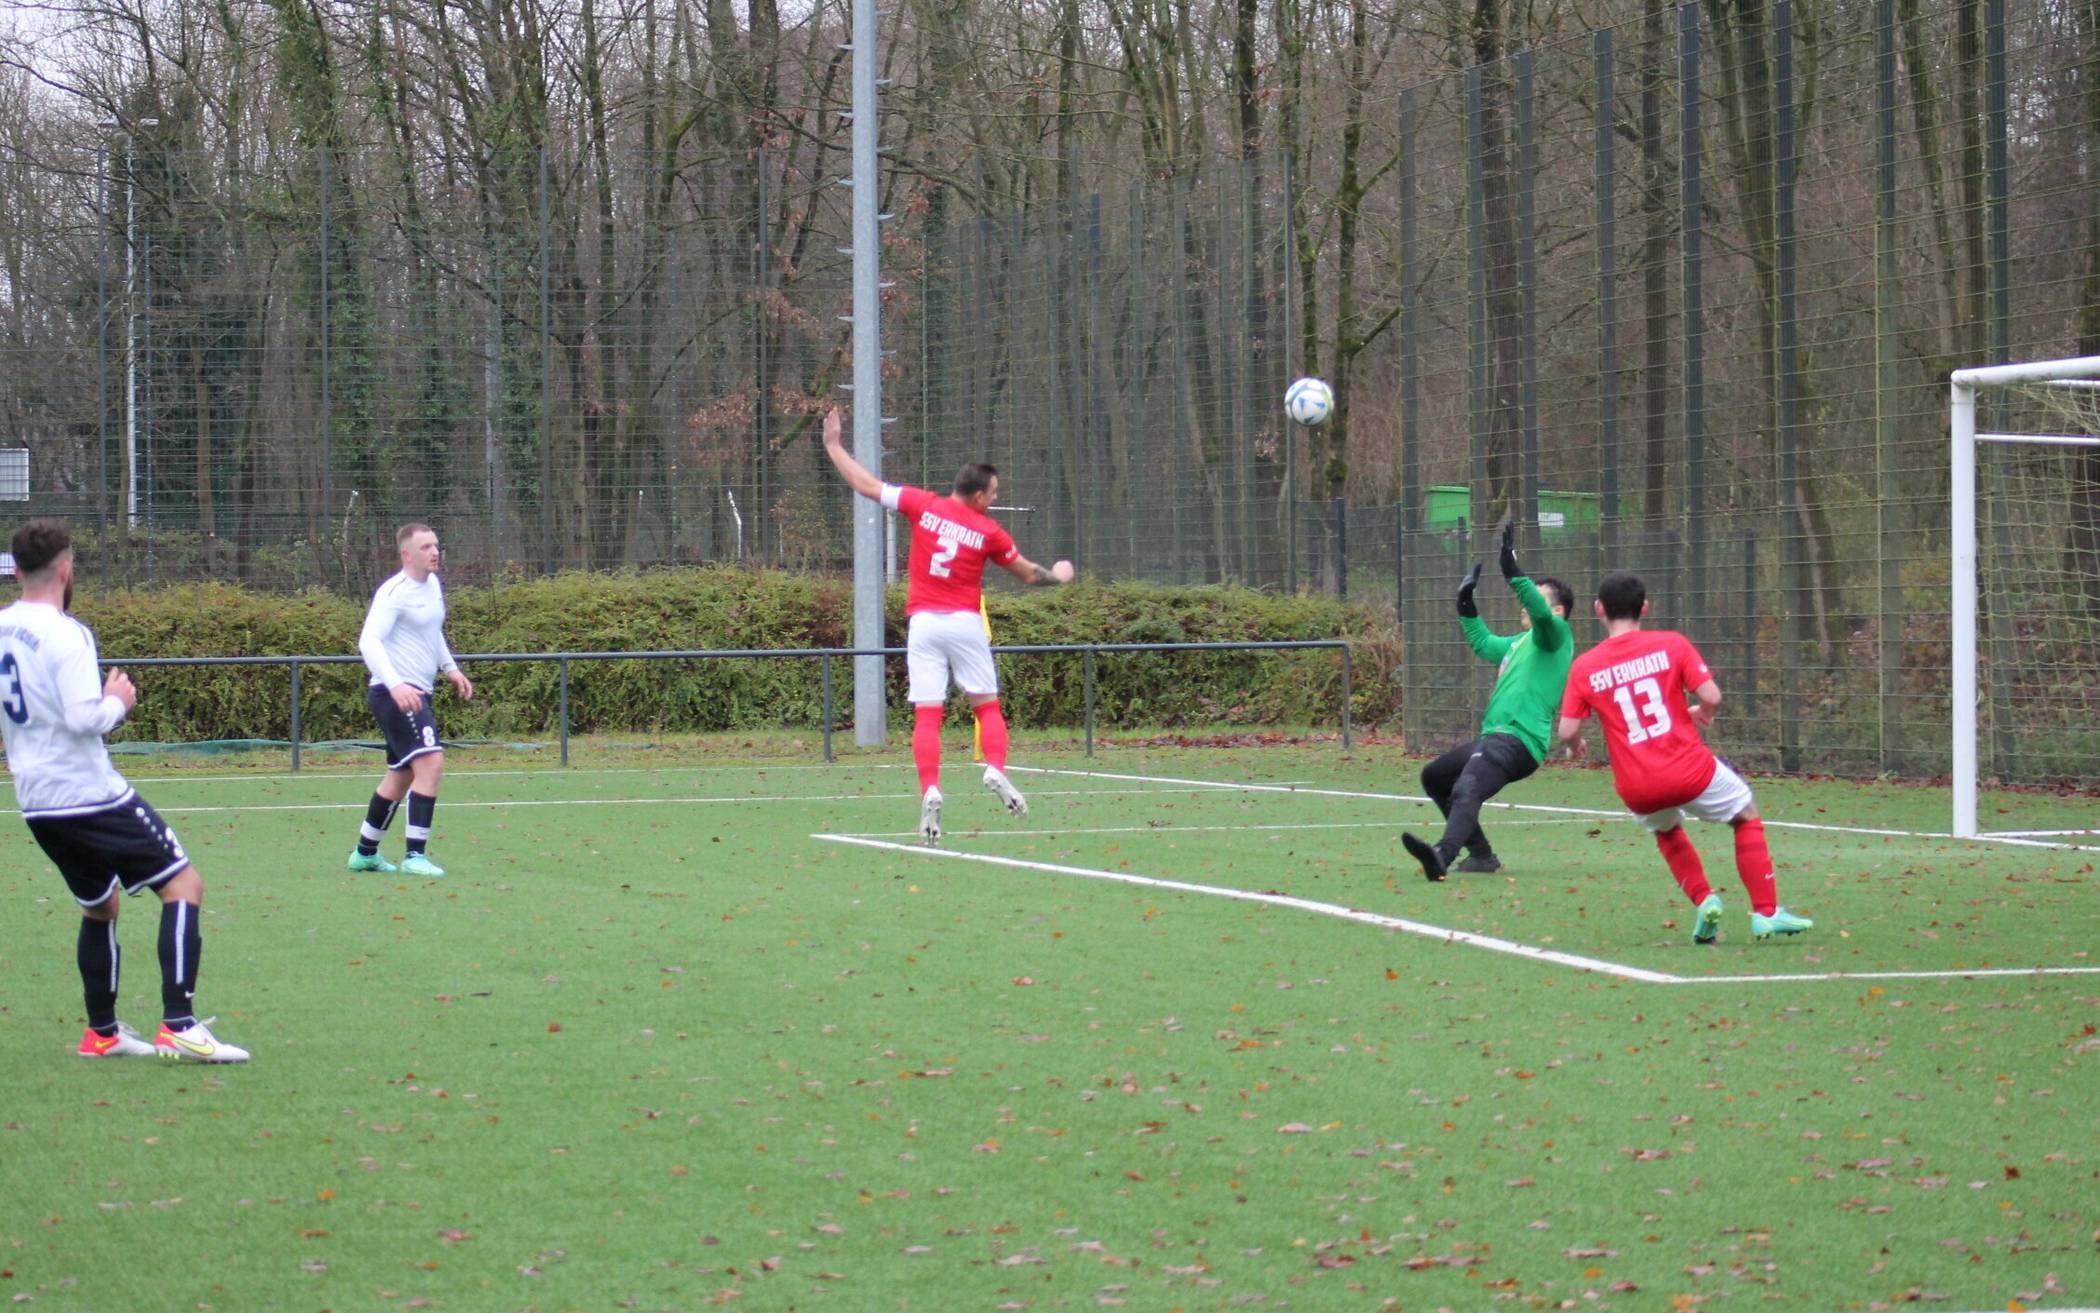 Erkrather Fußball vom Wochenende: SSV Erkrath II siegt im kleinen Derby gegen Rhenania Hochdahl II